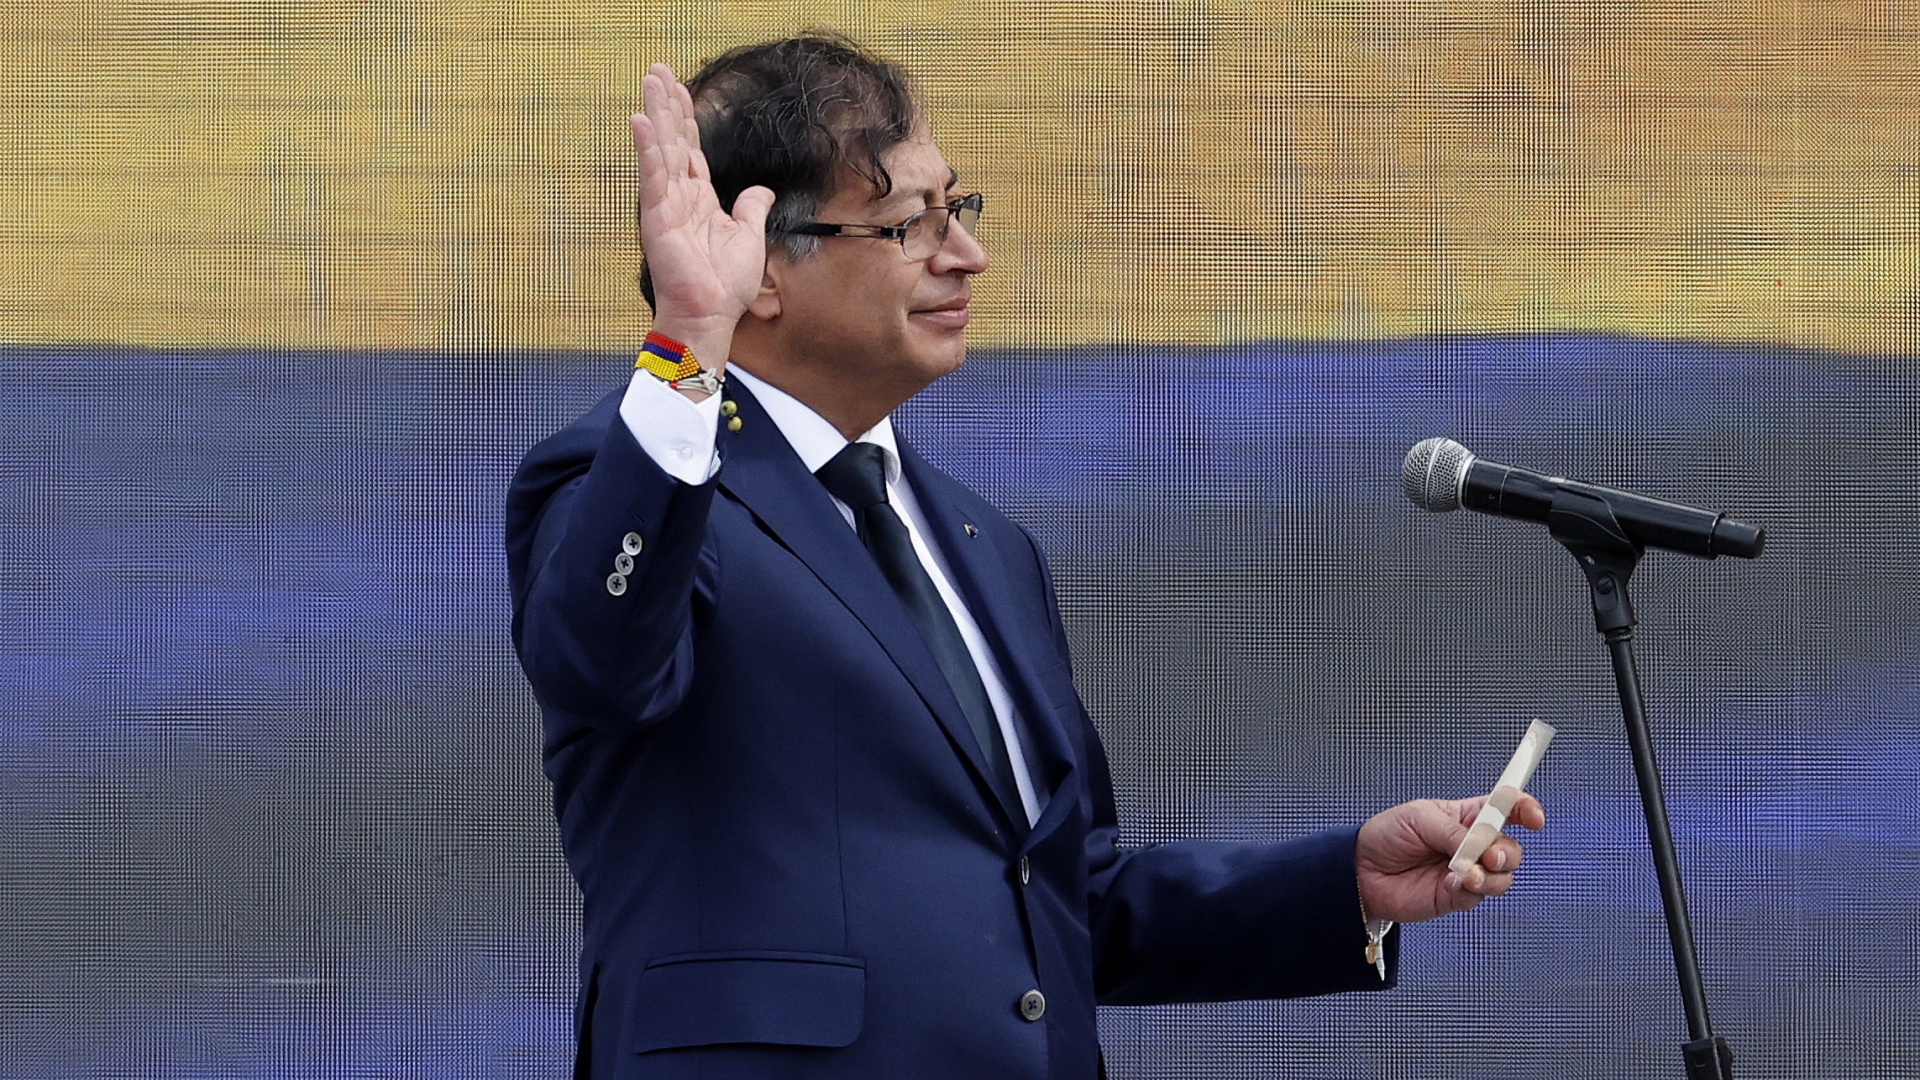 Gustavo Petro legt bei einer Zeremonie in Bogotá den Amtseid als Präsident Kolumbiens ab. | EPA